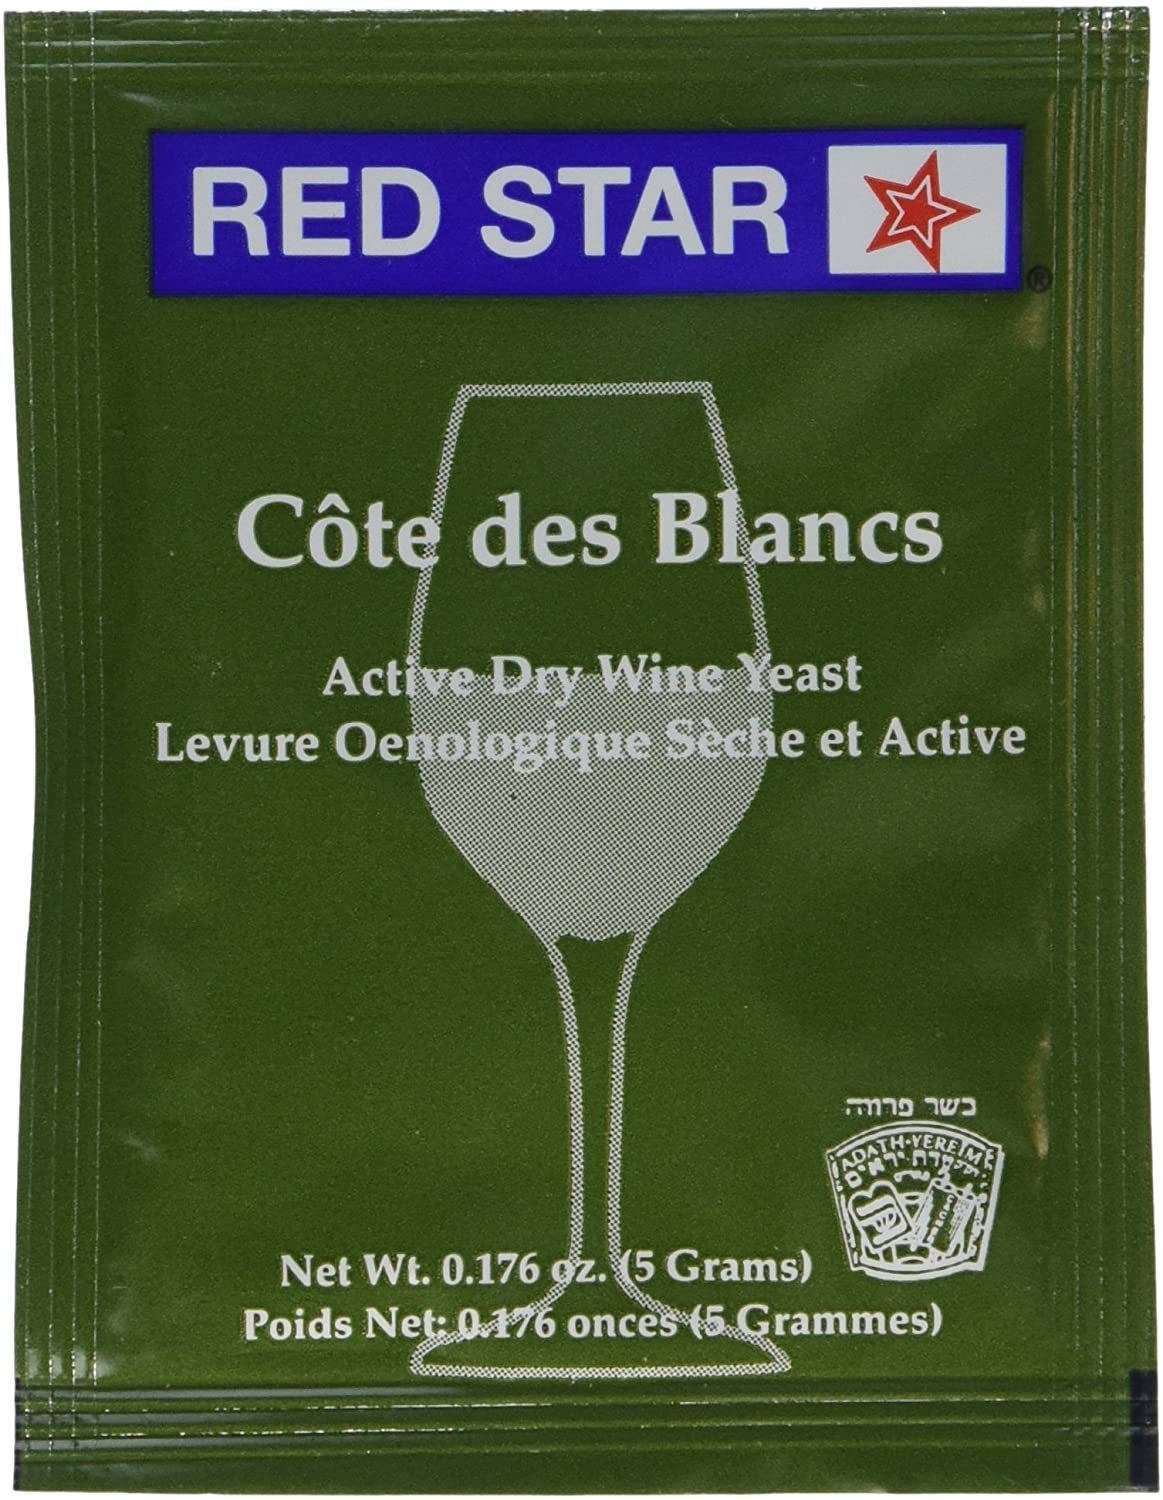 Red Star Cote des Blanc